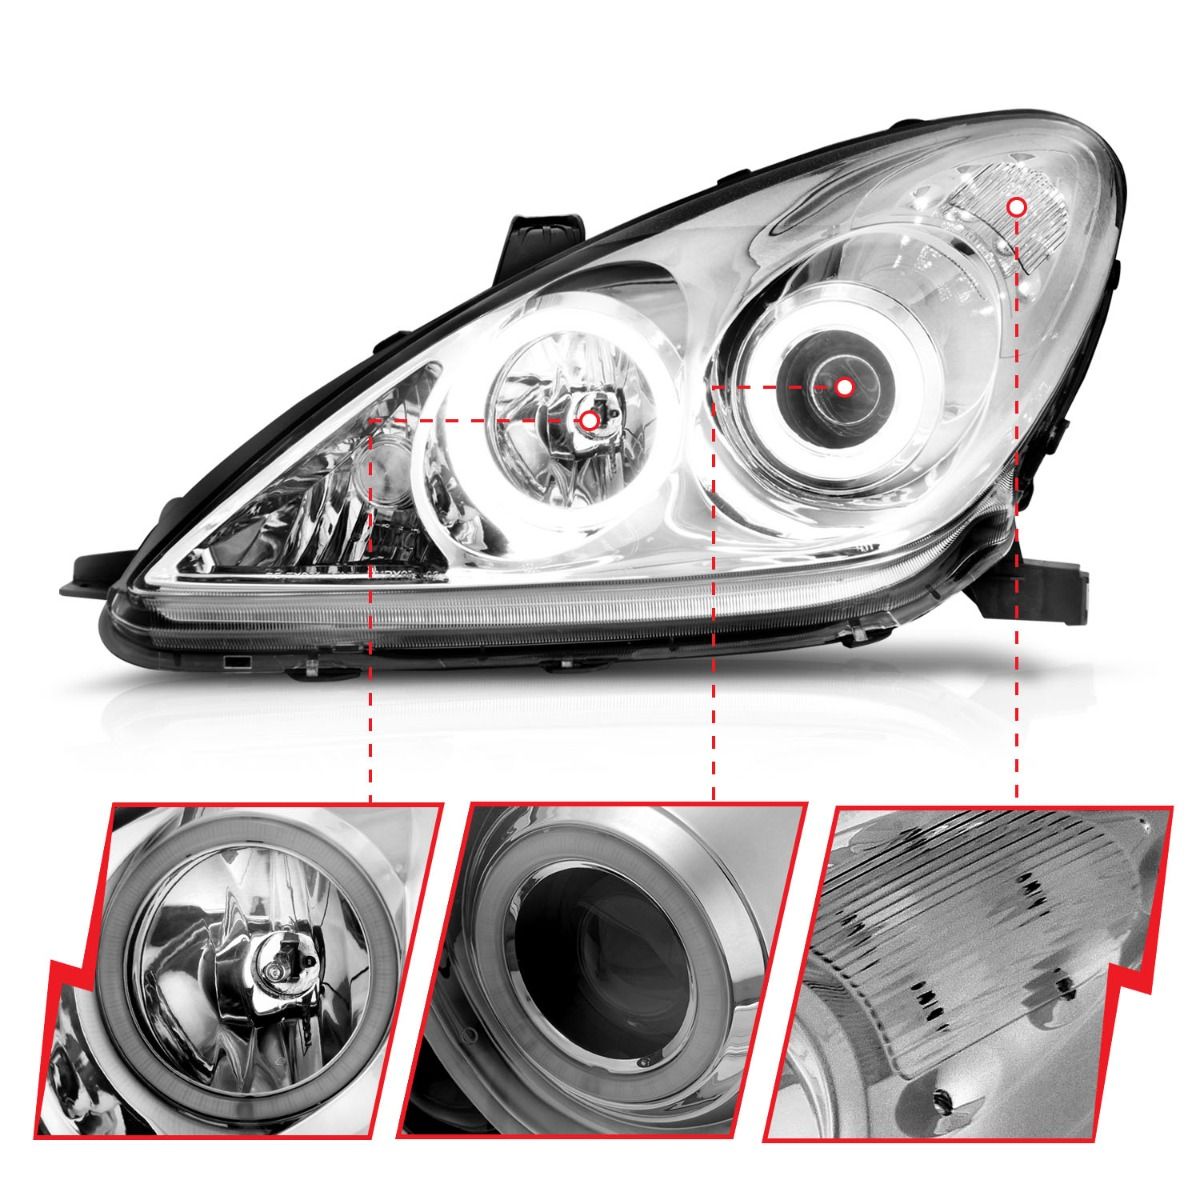 Lexus Projector Headlights, ES 300 Headlights, ES 330 Headlights, Chrome Projector Headlights, Anzo Projector Headlights